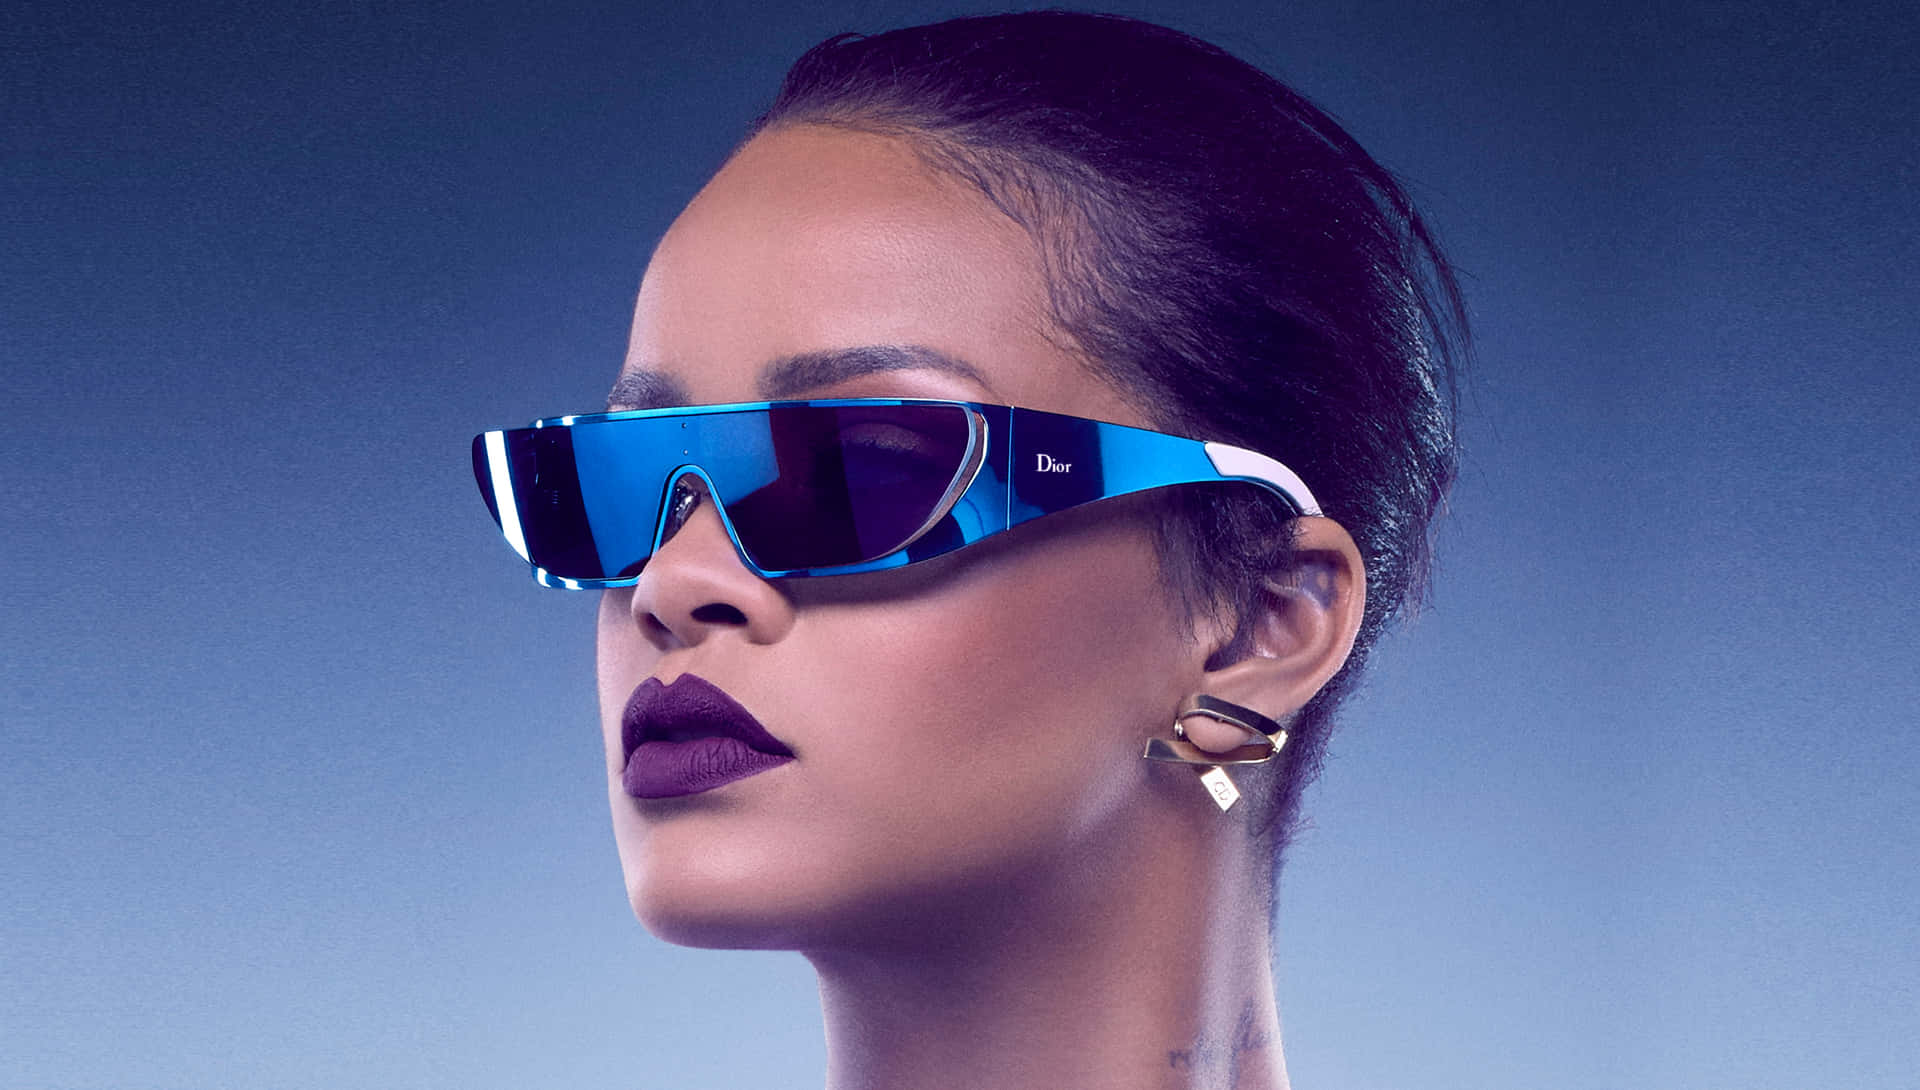 Rihannaverkörpert Ihren Individuellen Stil Und Ihre Modische Ausstrahlung.